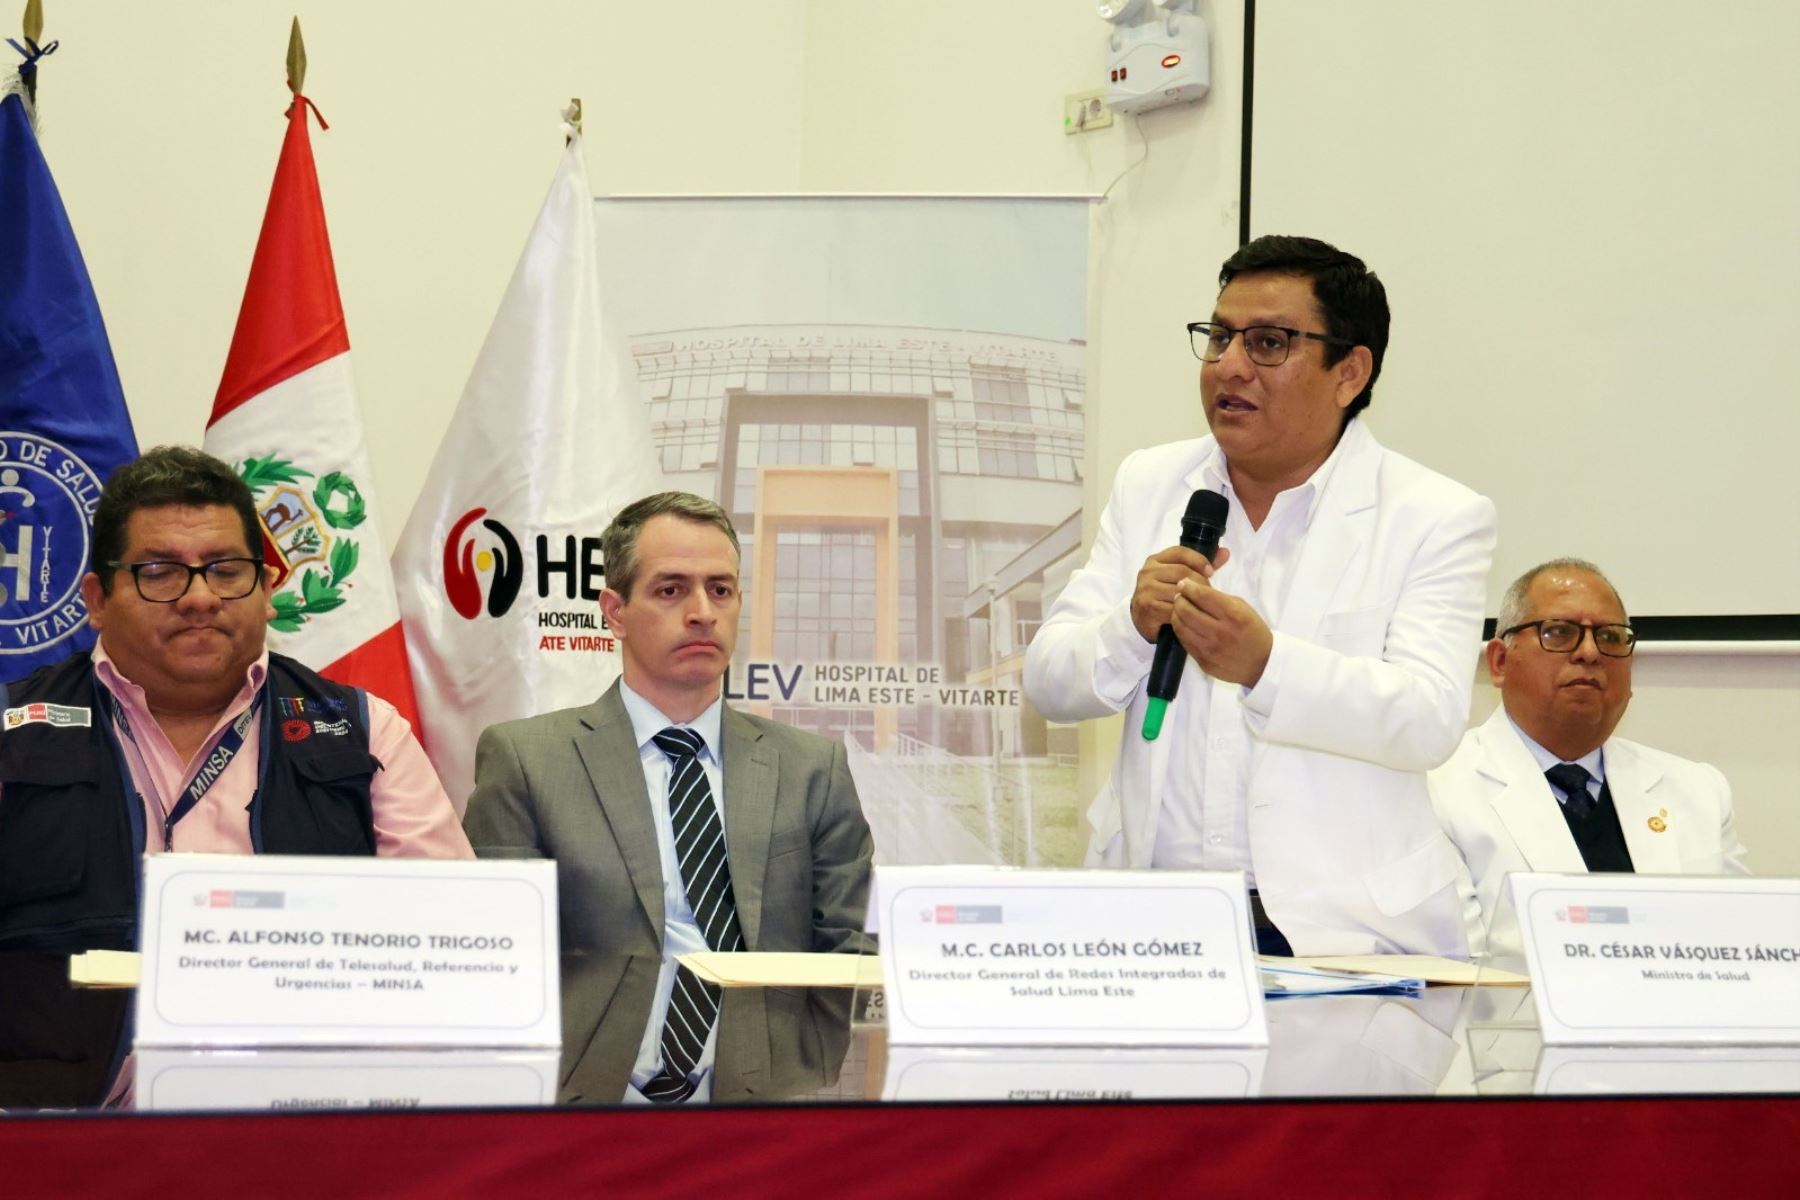 El ministro de Salud, César Vásquez, participó en la inauguración del servicio de telesalud en el Hospital Lima Este-Vitarte. Foto: MINSA/Difusión.